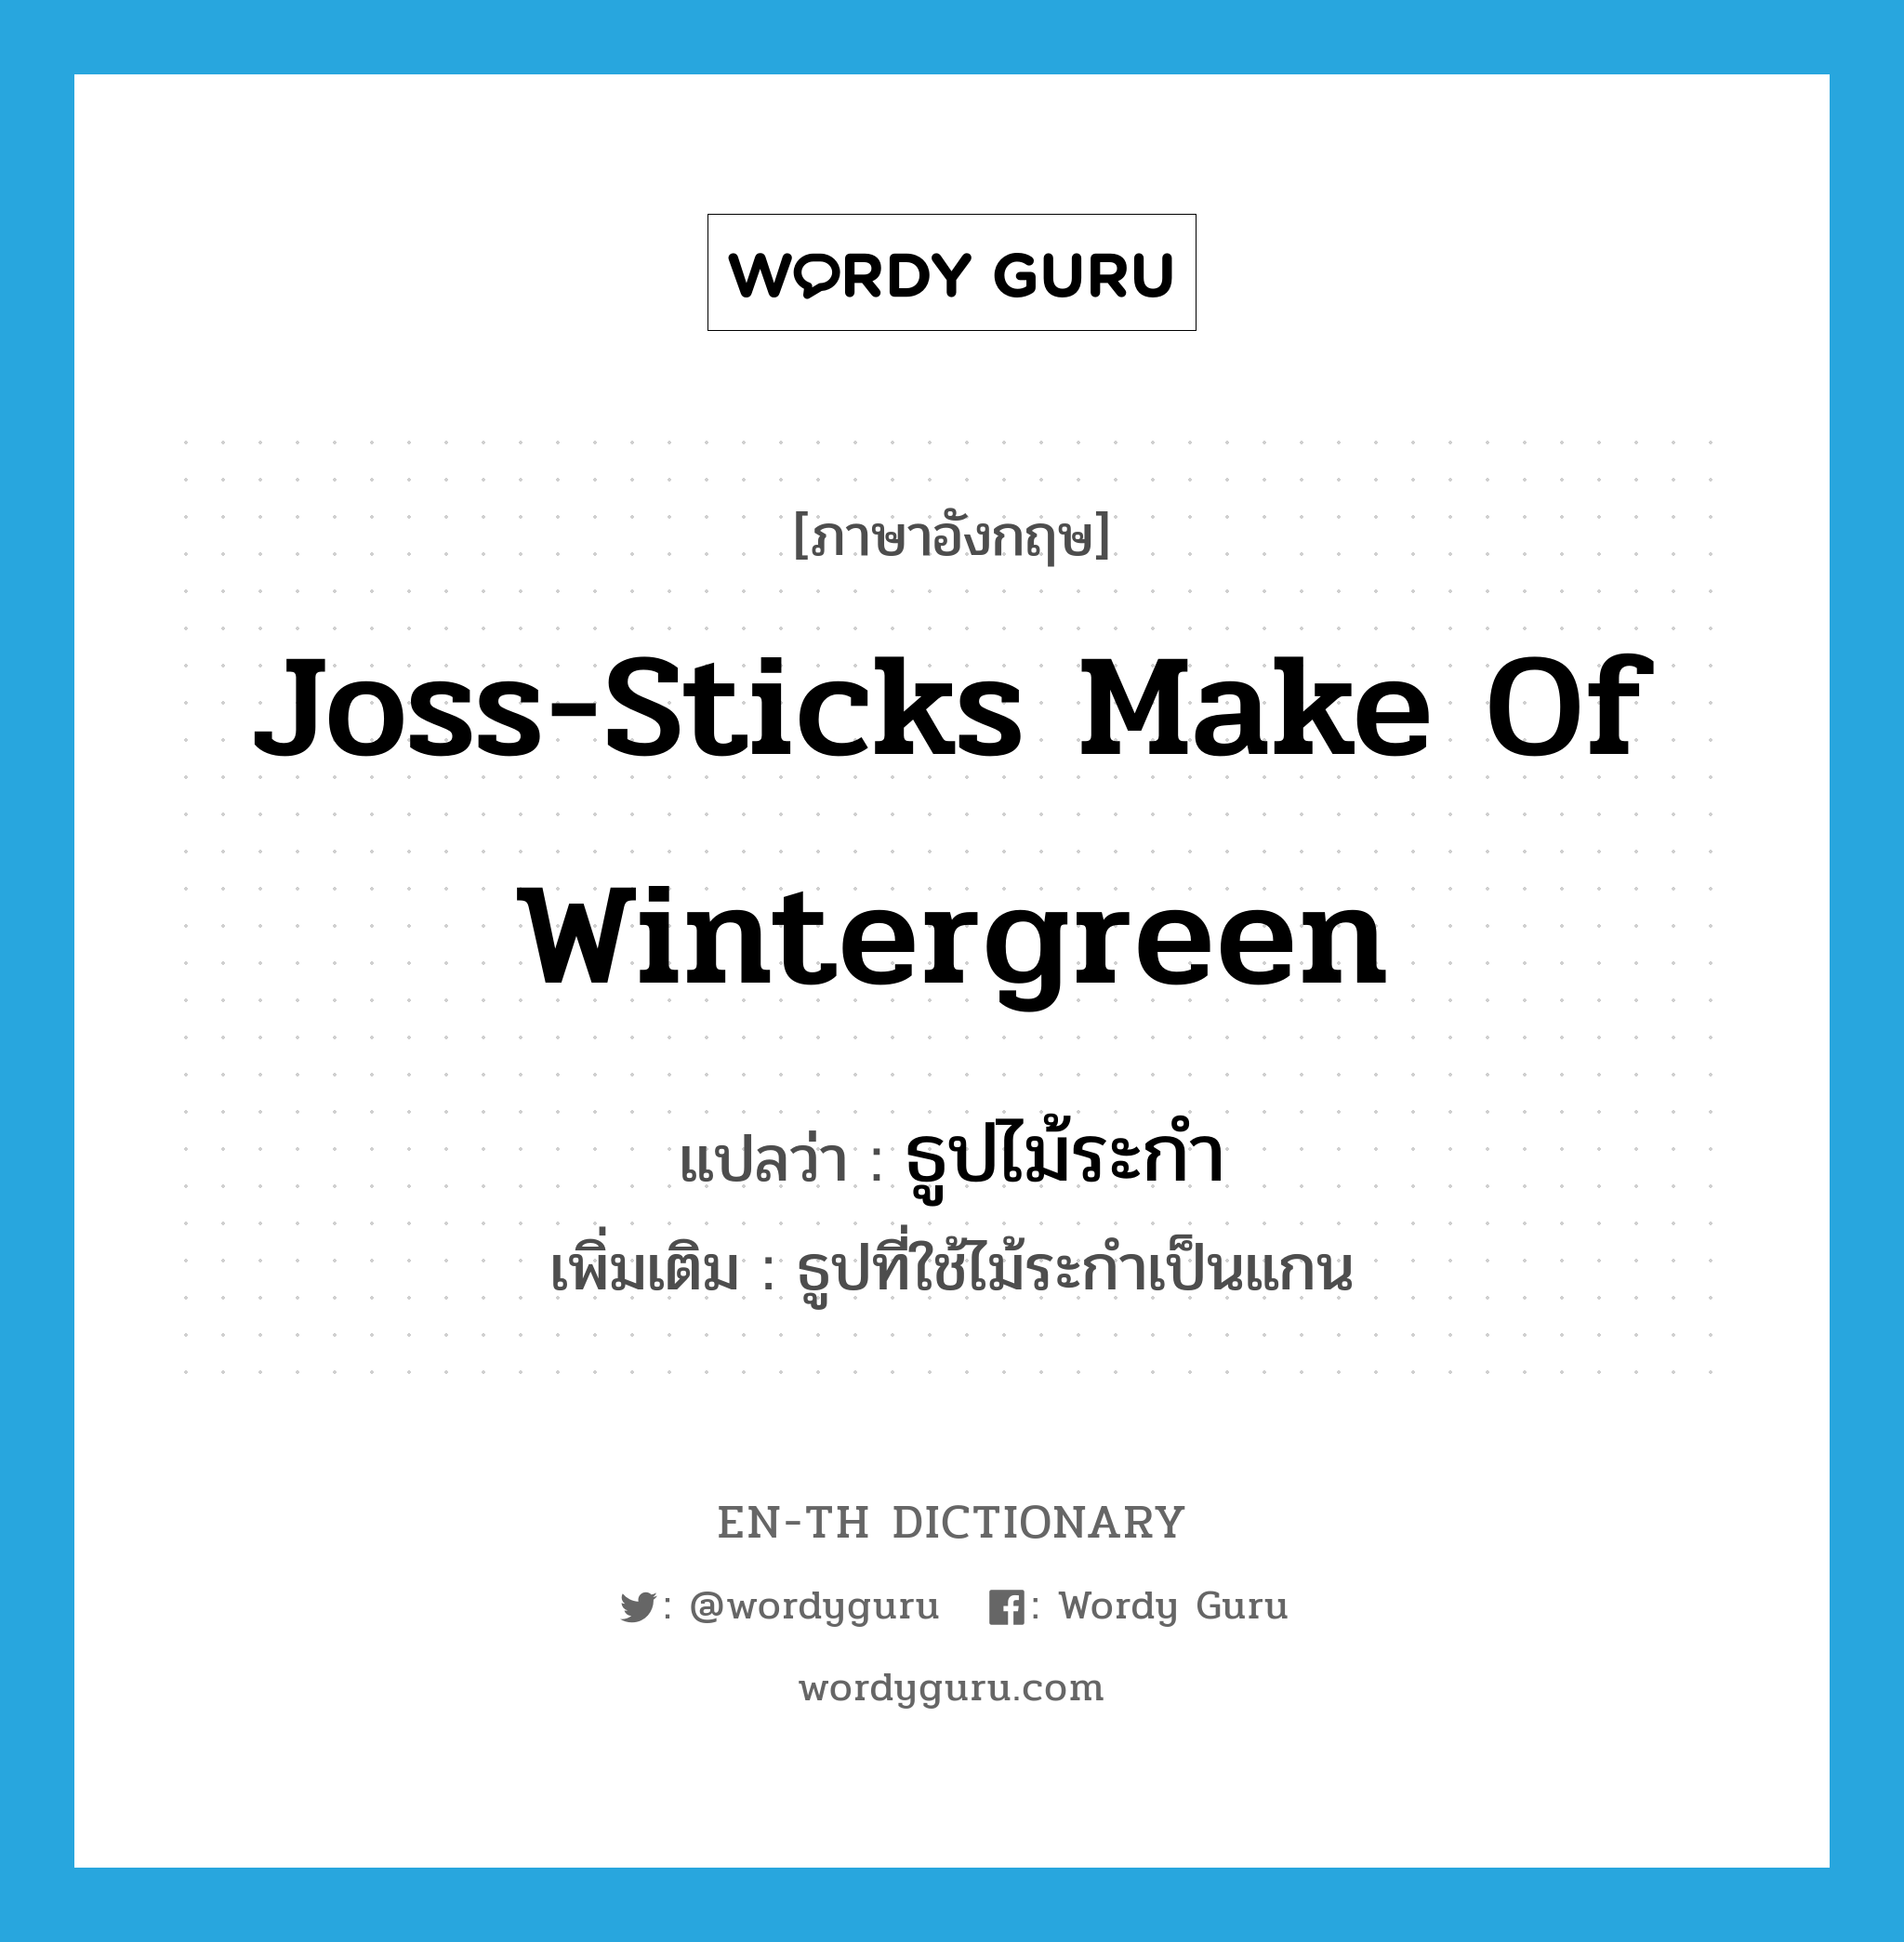 joss-sticks make of wintergreen แปลว่า?, คำศัพท์ภาษาอังกฤษ joss-sticks make of wintergreen แปลว่า ธูปไม้ระกำ ประเภท N เพิ่มเติม ธูปที่ใช้ไม้ระกำเป็นแกน หมวด N